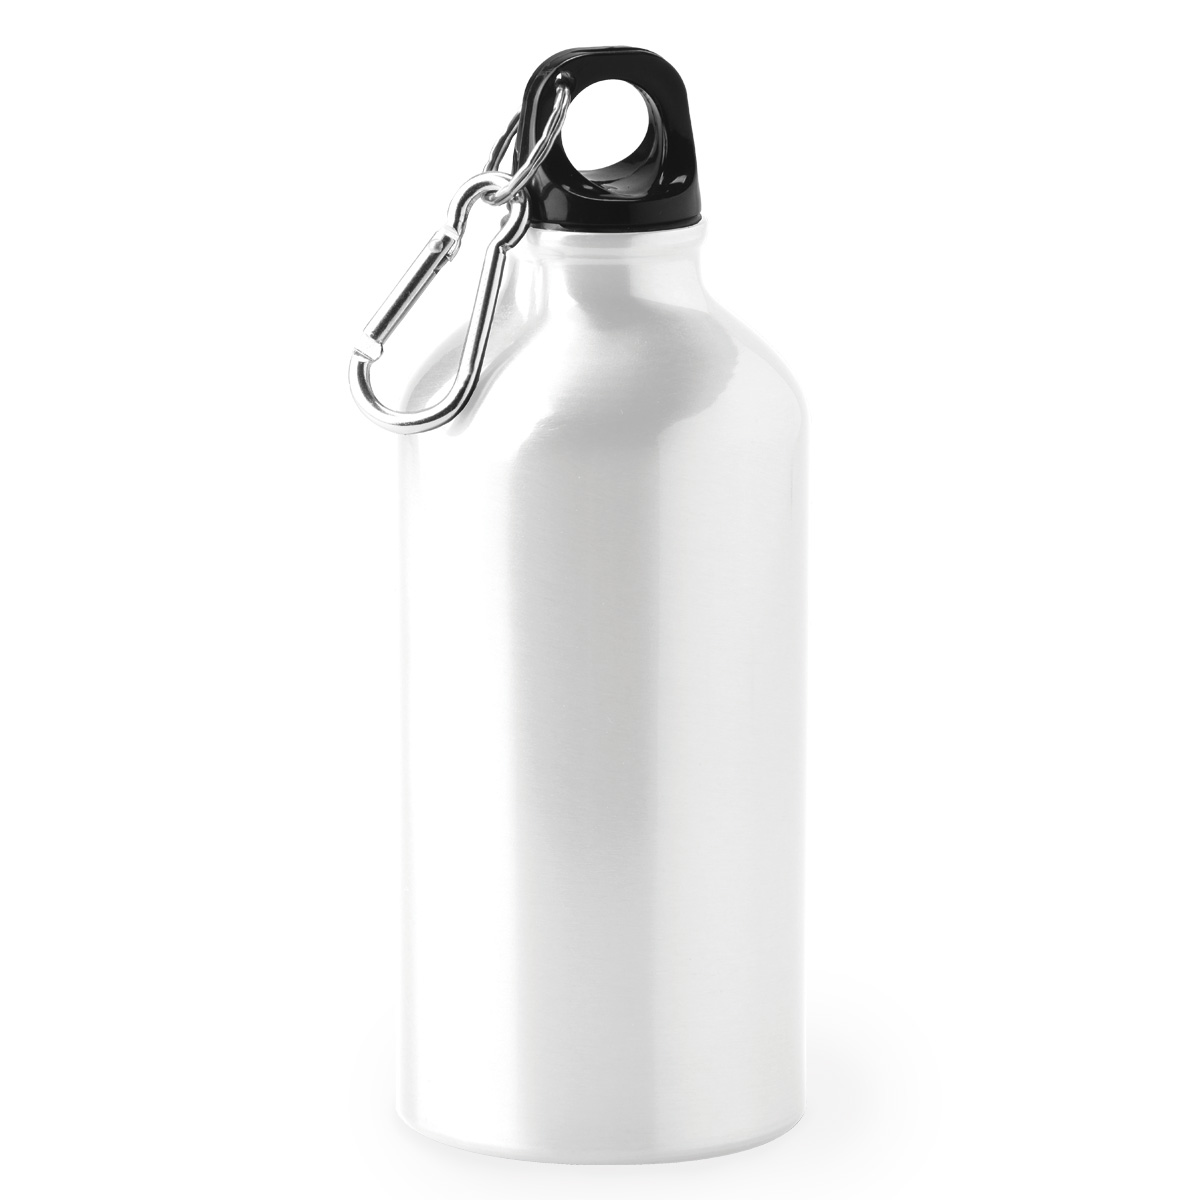 Sub 500ml Aluminium Water Bottle Product Image